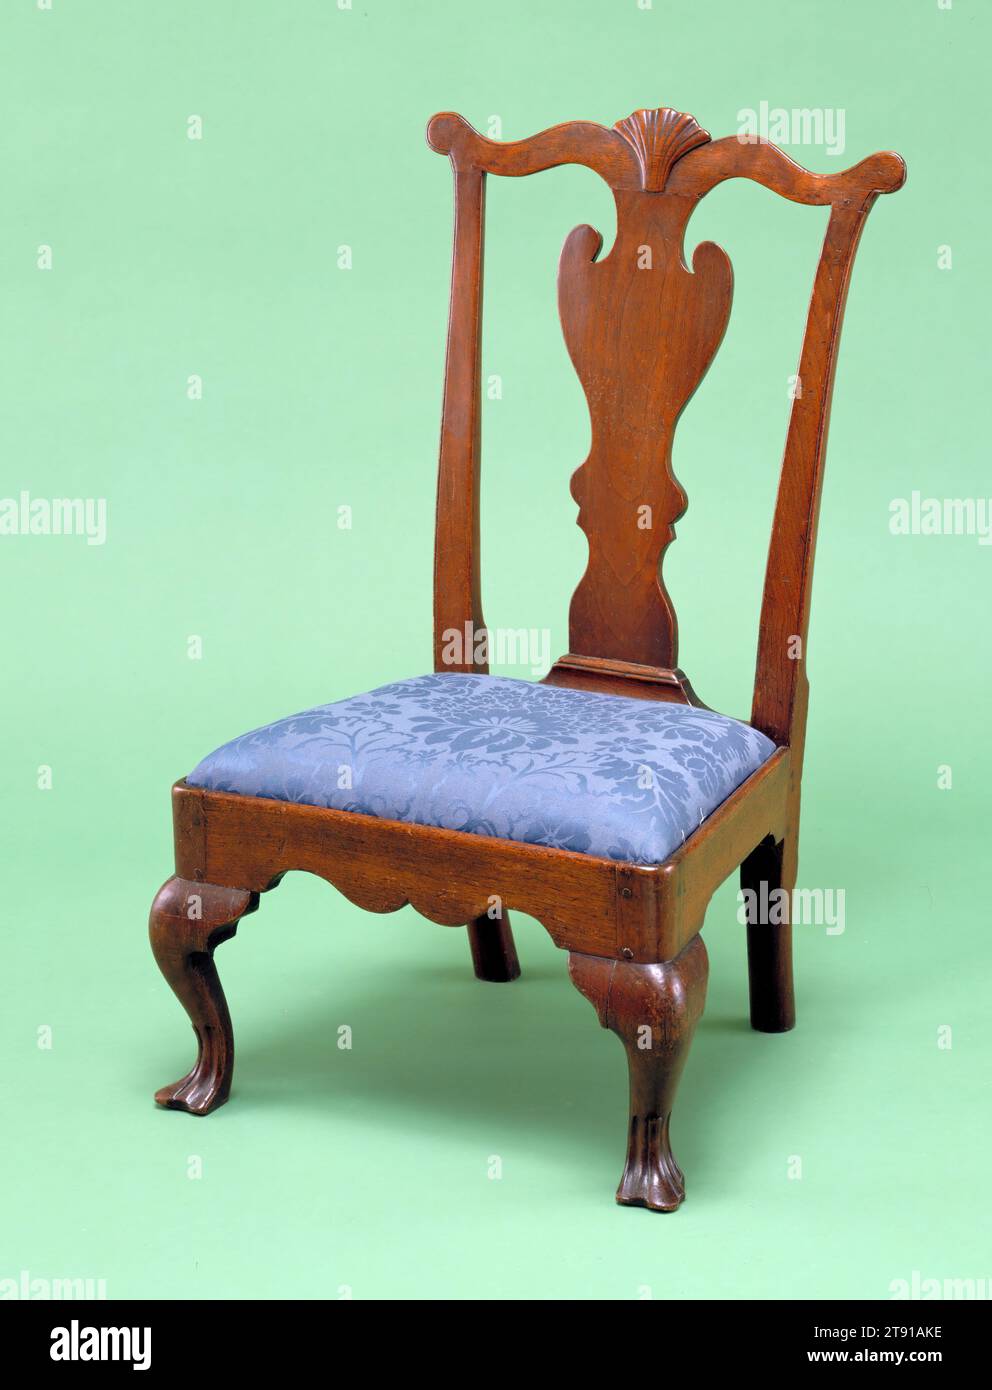 Hausschuh, ca. 1760-1790, 35 x 20 1/2 x 17 Zoll (88,9 x 52,07 x 43,18 cm), Nussbaum, Tuch, USA, 18. Jahrhundert, dieser niedrig sitzende Stuhl ist ein seltenes Beispiel für diese Form, er könnte als Kinderstuhl verwendet worden sein Stockfoto